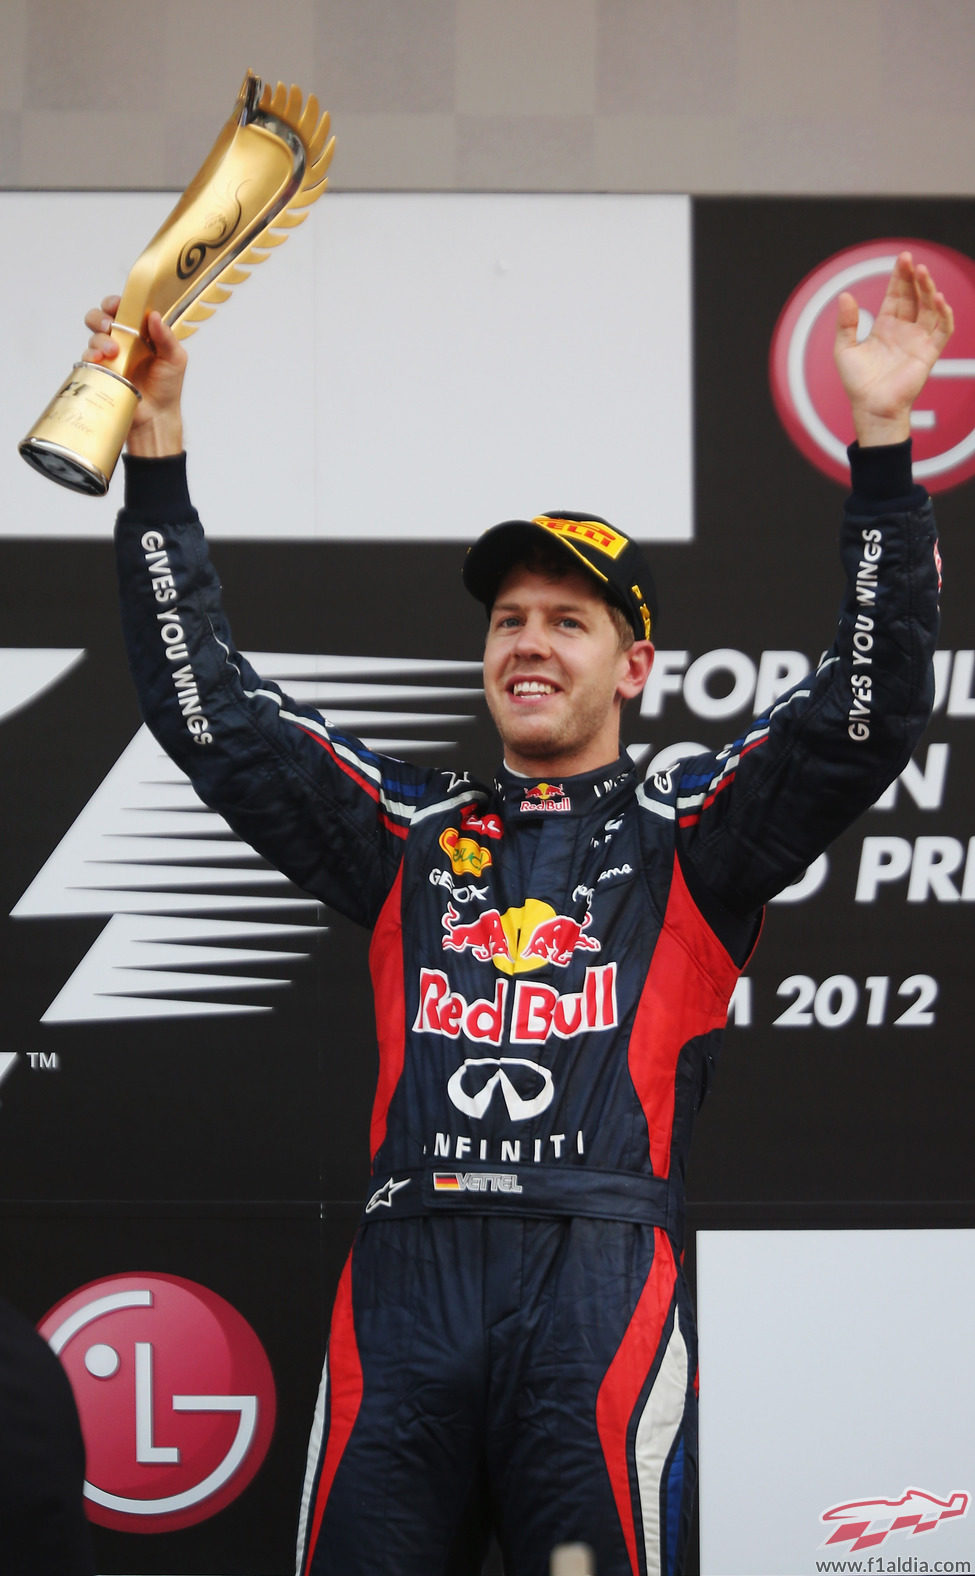 Sebastian Vettel levanta su trofeo de ganador en el GP de Corea 2012